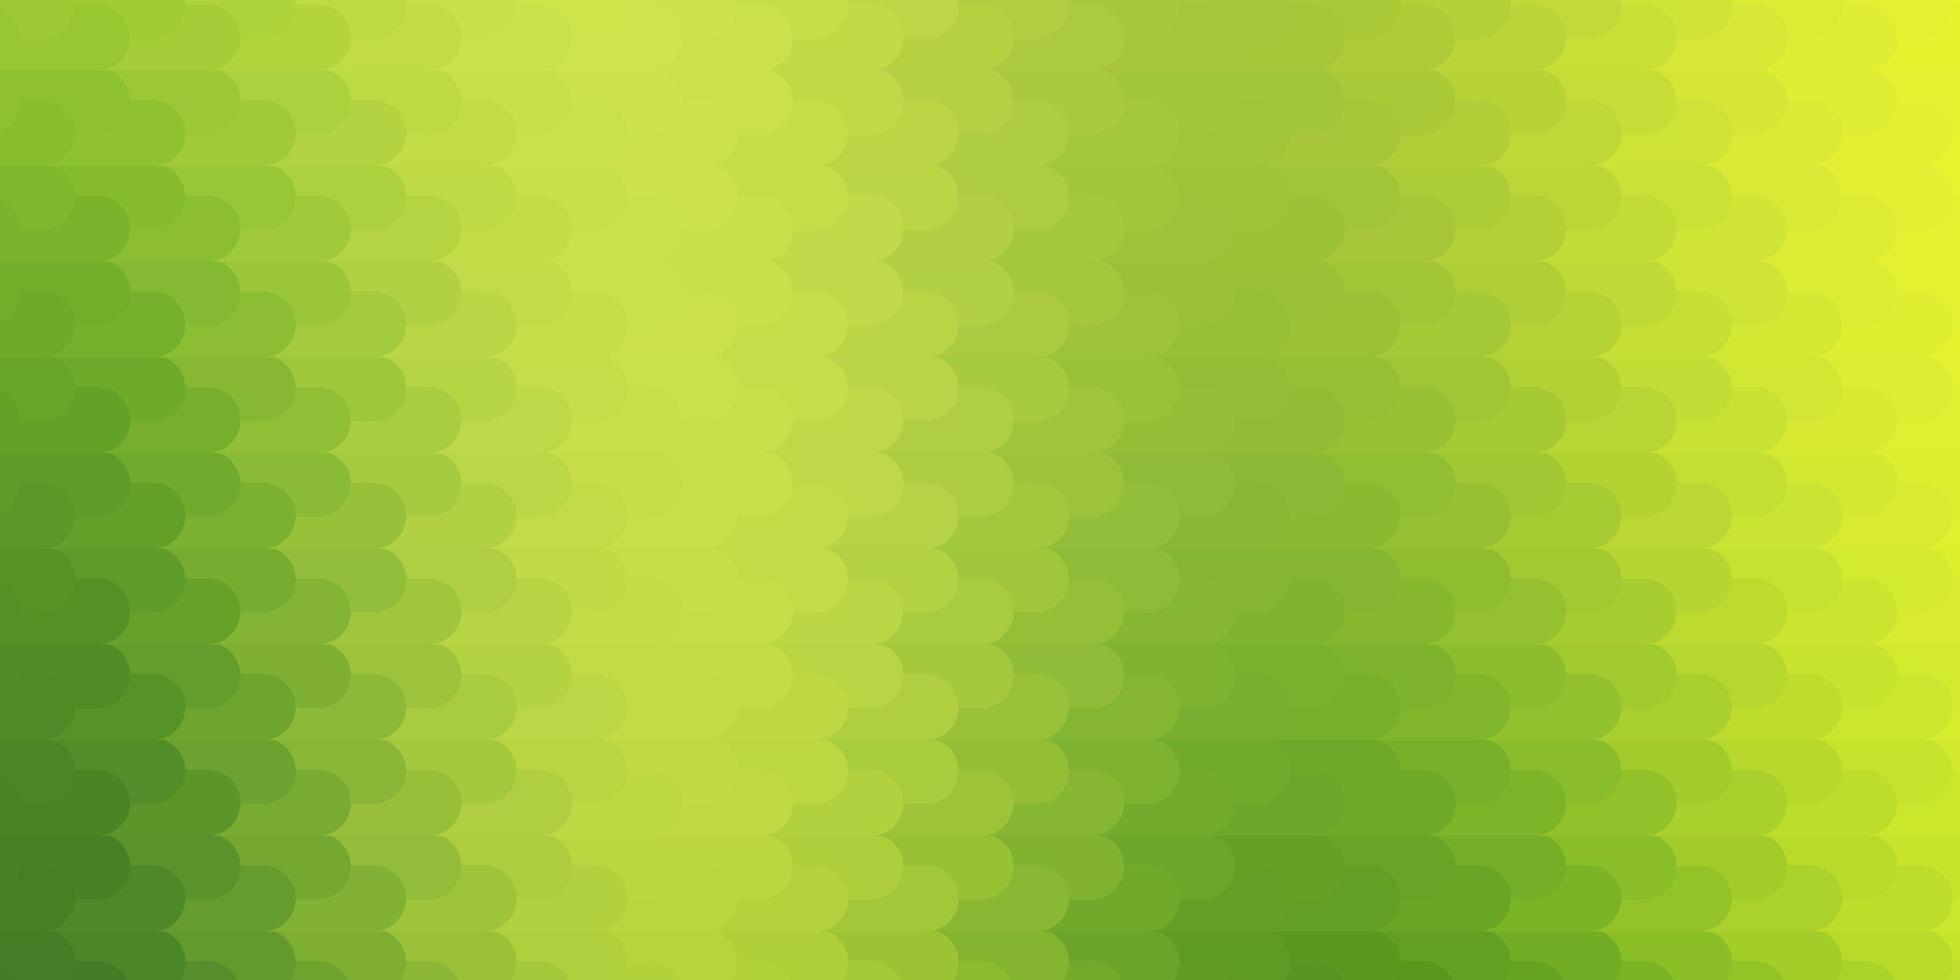 plantilla de vector verde claro, amarillo con líneas.